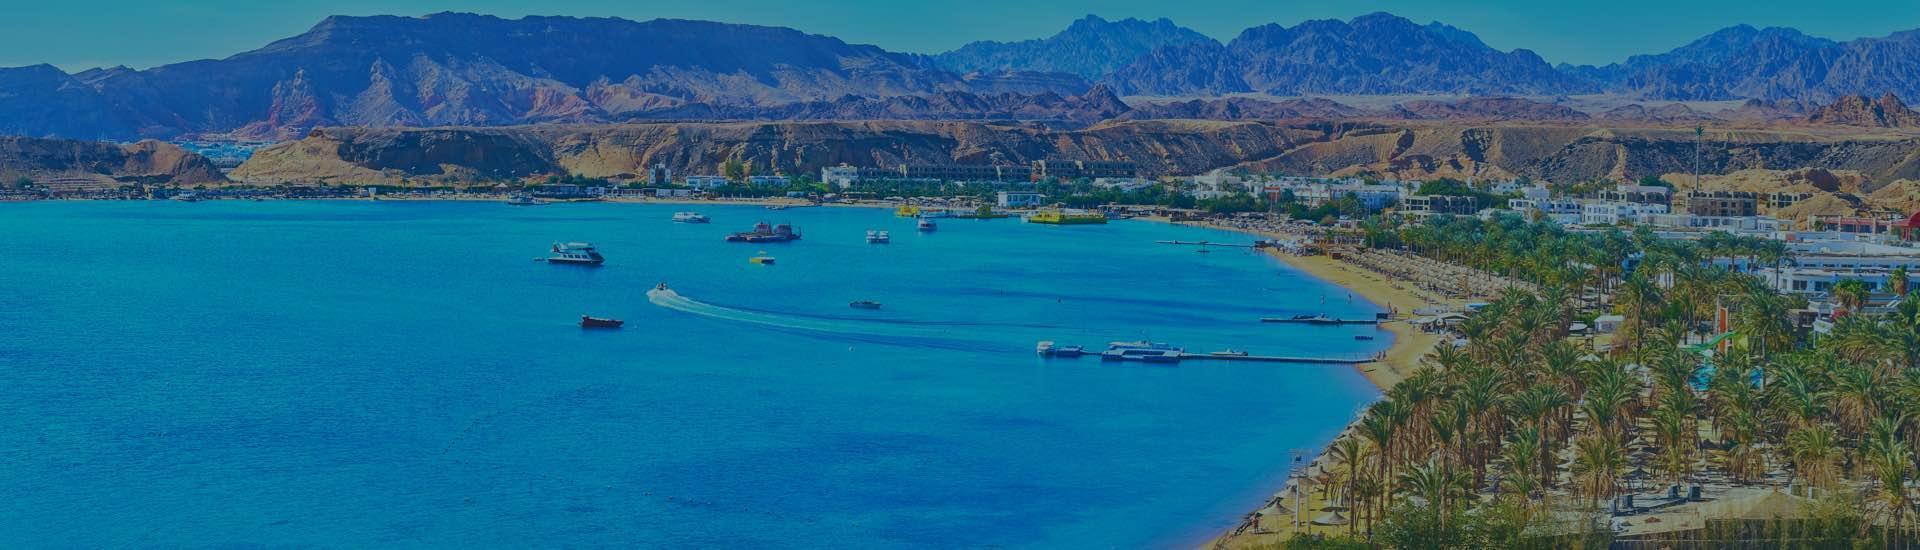 Find the Best HotelsS in Sharm El Sheikh